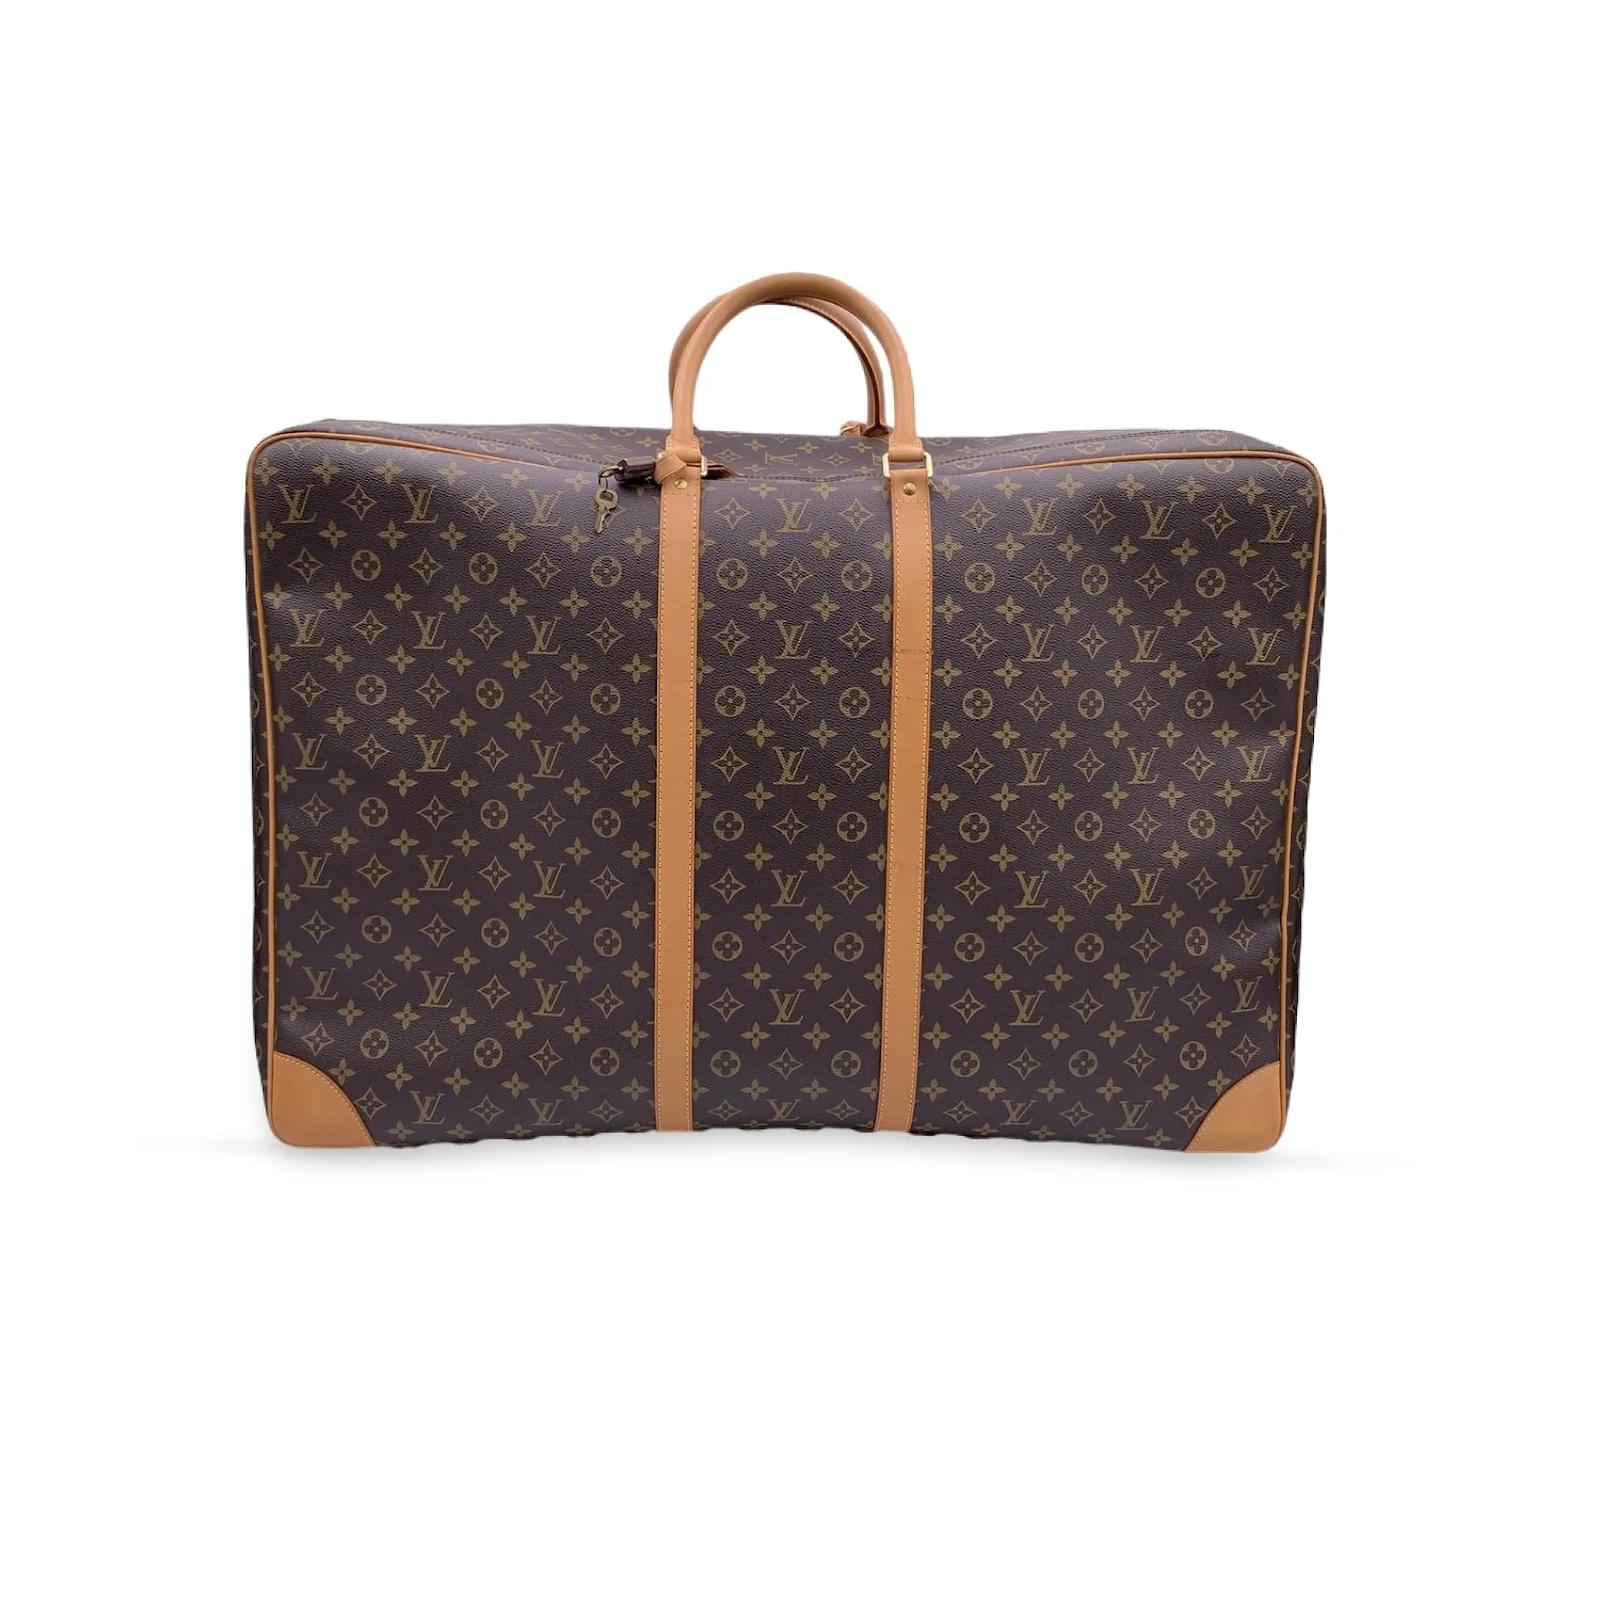 LOUIS VUITTON Sirius 55 Monogram Canvas Suitcase Travel Bag-US